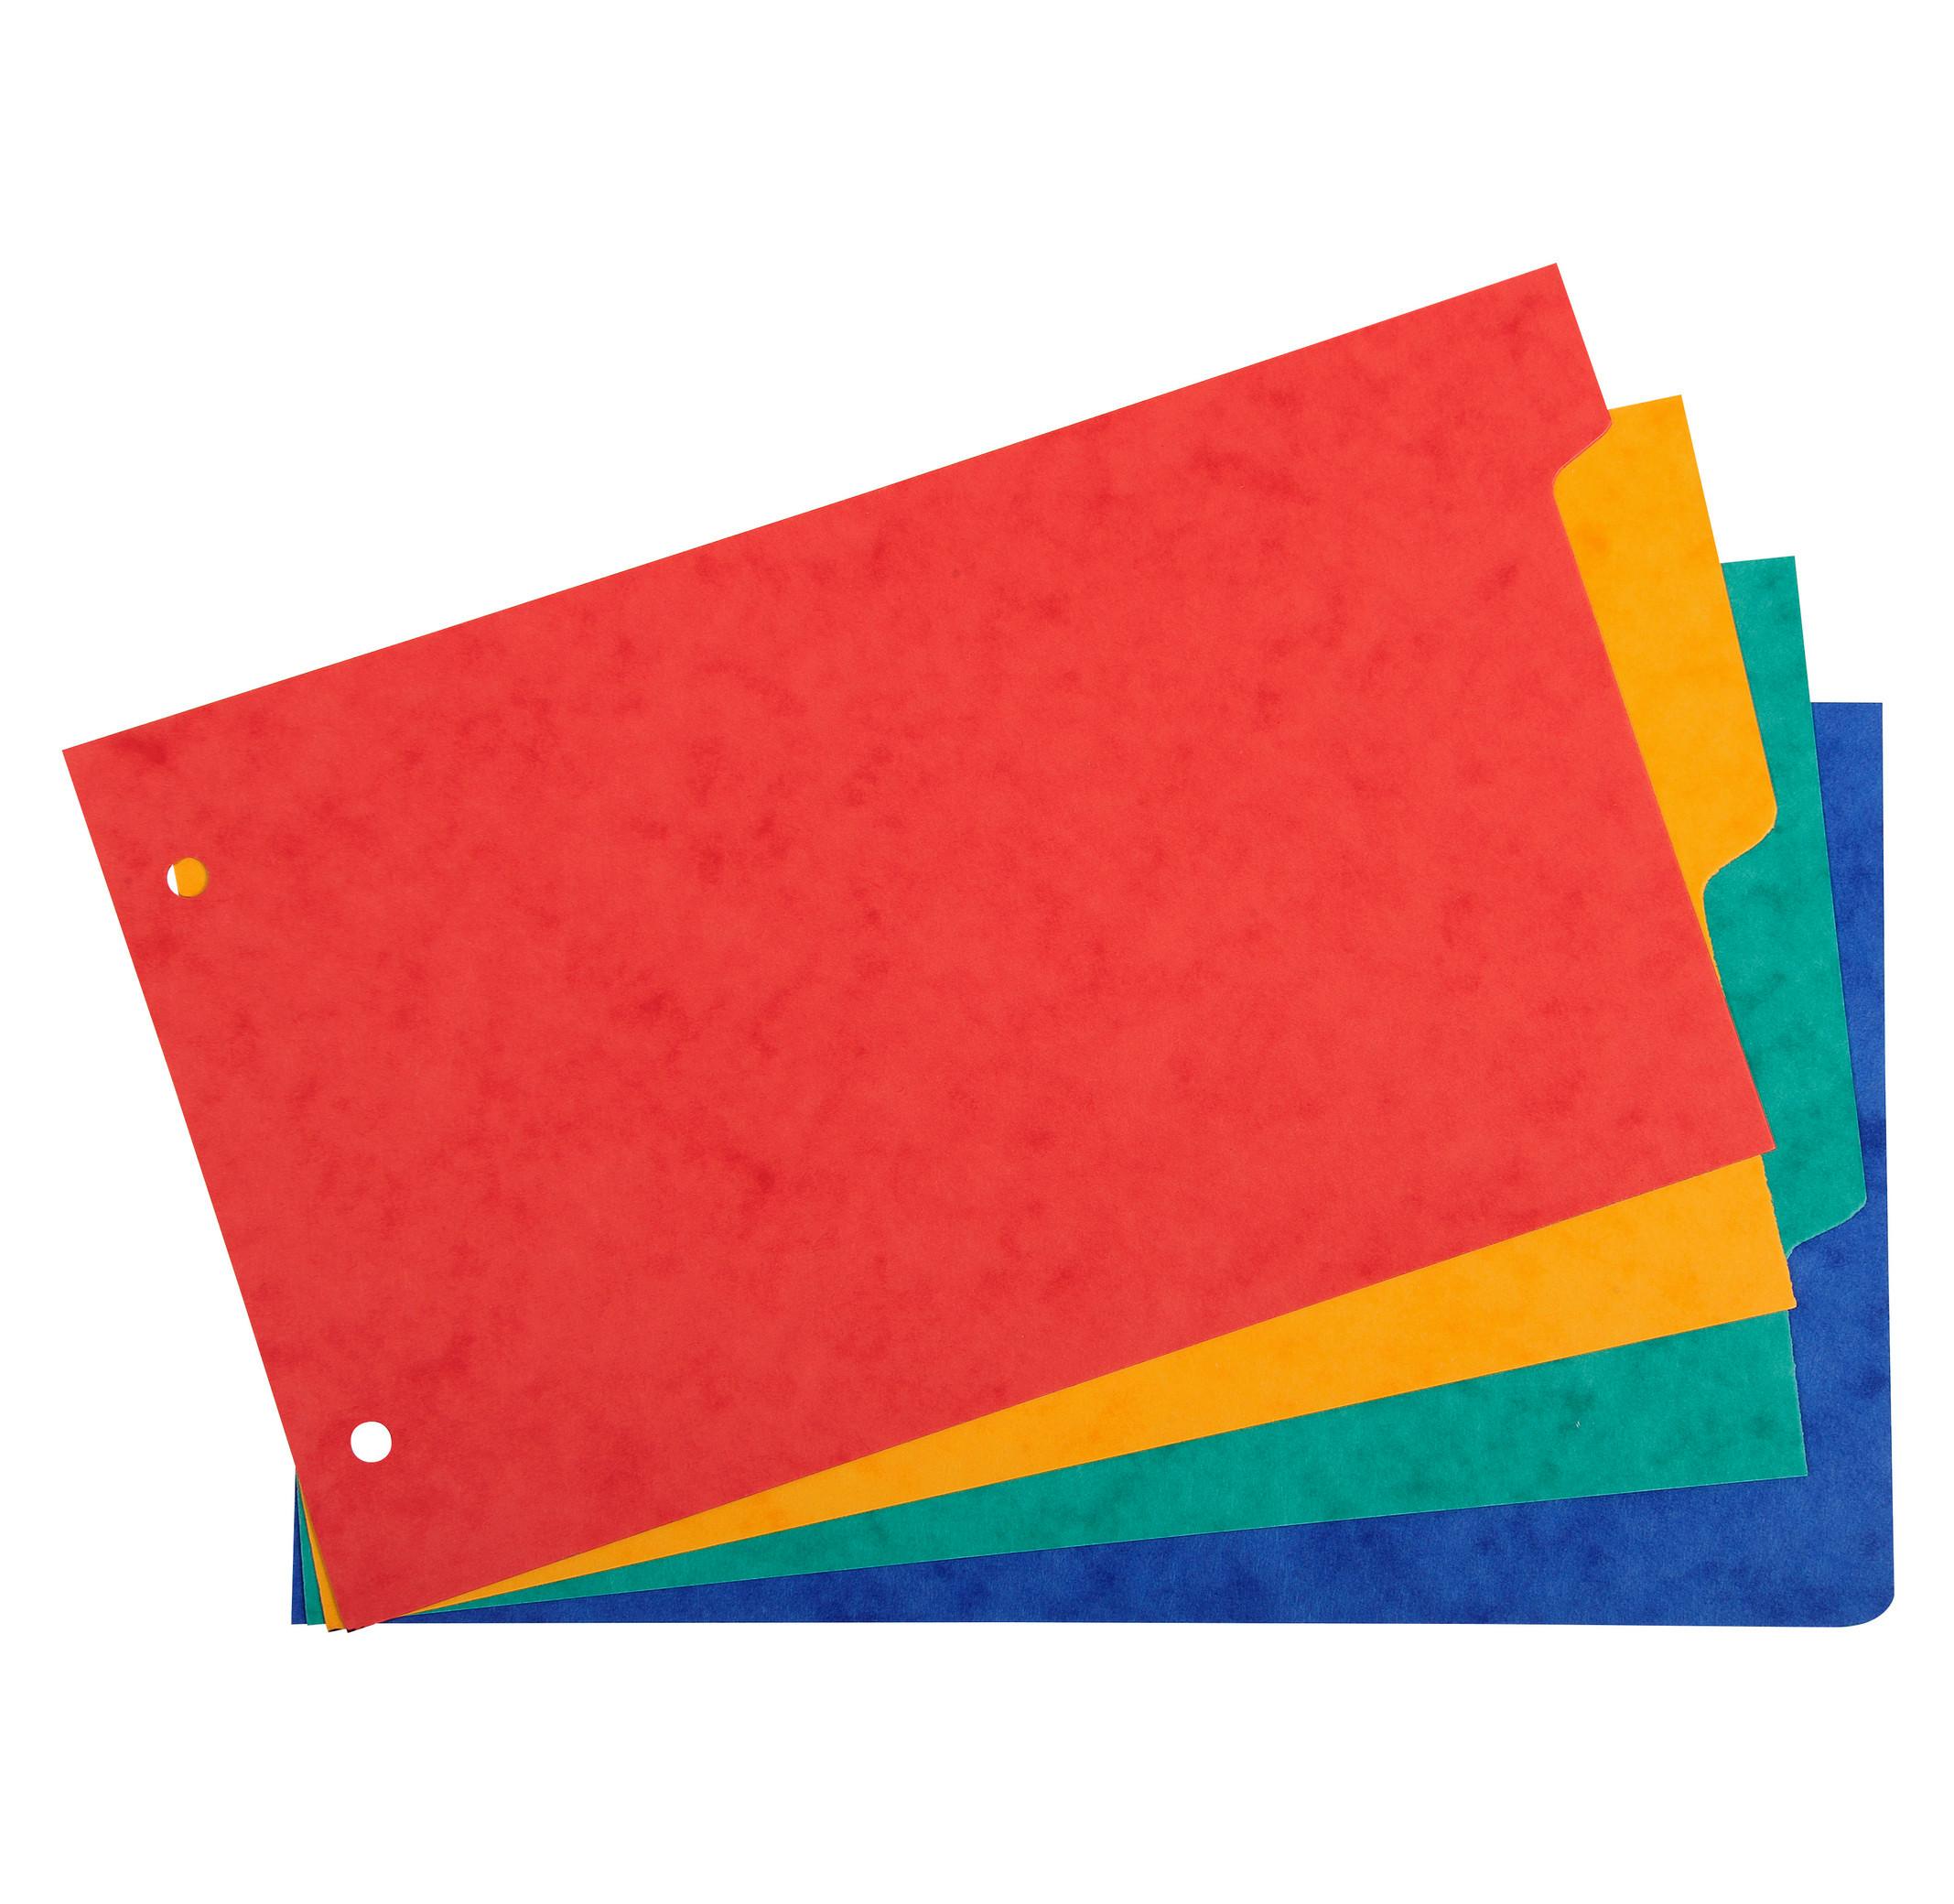 Exacompta Register 125x200mm, flexibler Colorspan-Karton 225g, 4 Taben, 2-fach gelocht, für Karteikarten - x 10  